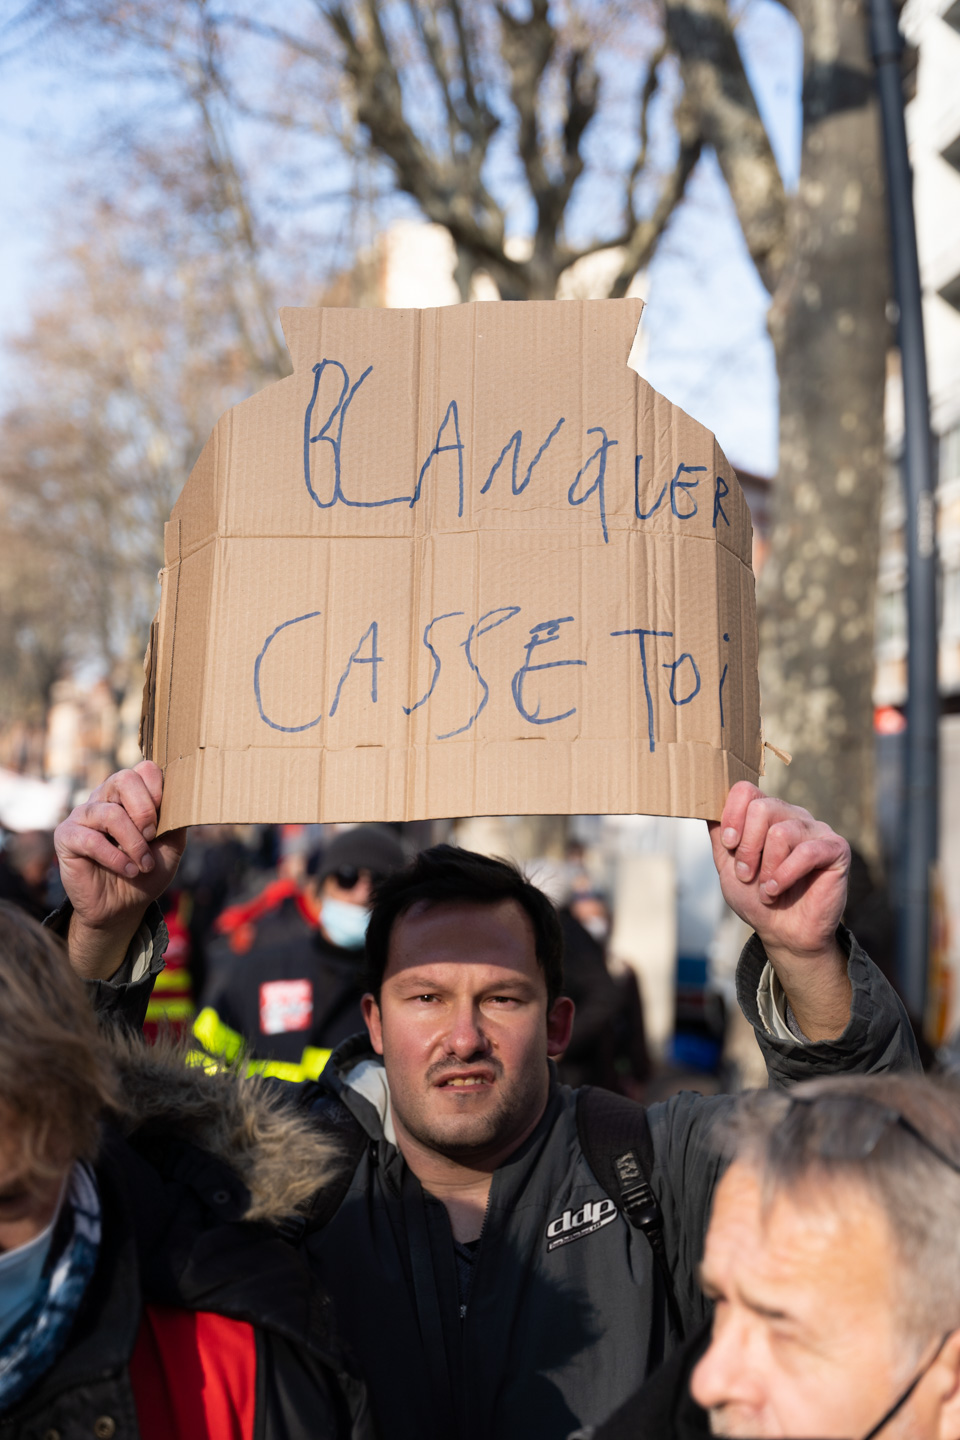 Un manifestant brandit une pancarte appellant le ministre de l'Education nationale à la démission lors de la manifestation interprofessionnelle pour la hausse des salaires organisée à l’appel des organisations syndicales CGT (Confédération générale du travail), FO (Force ouvrière), FSU (Fédération syndicale unitaire) et Solidaires.  Toulouse, le 27 janvier 2022.